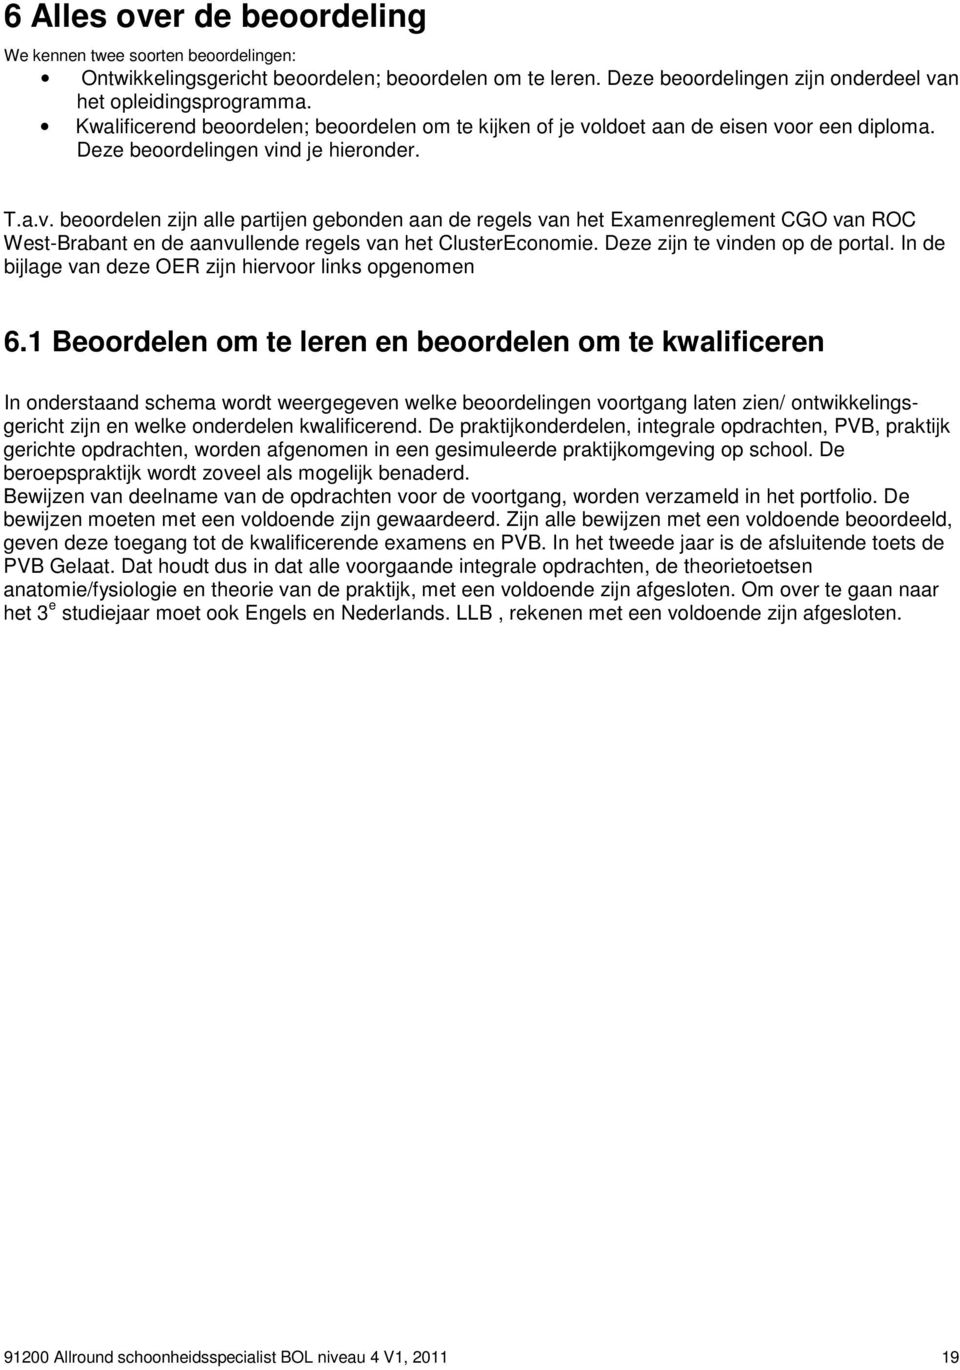 ldoet aan de eisen voor een diploma. Deze beoordelingen vind je hieronder. T.a.v. beoordelen zijn alle partijen gebonden aan de regels van het Examenreglement CGO van ROC West-Brabant en de aanvullende regels van het ClusterEconomie.